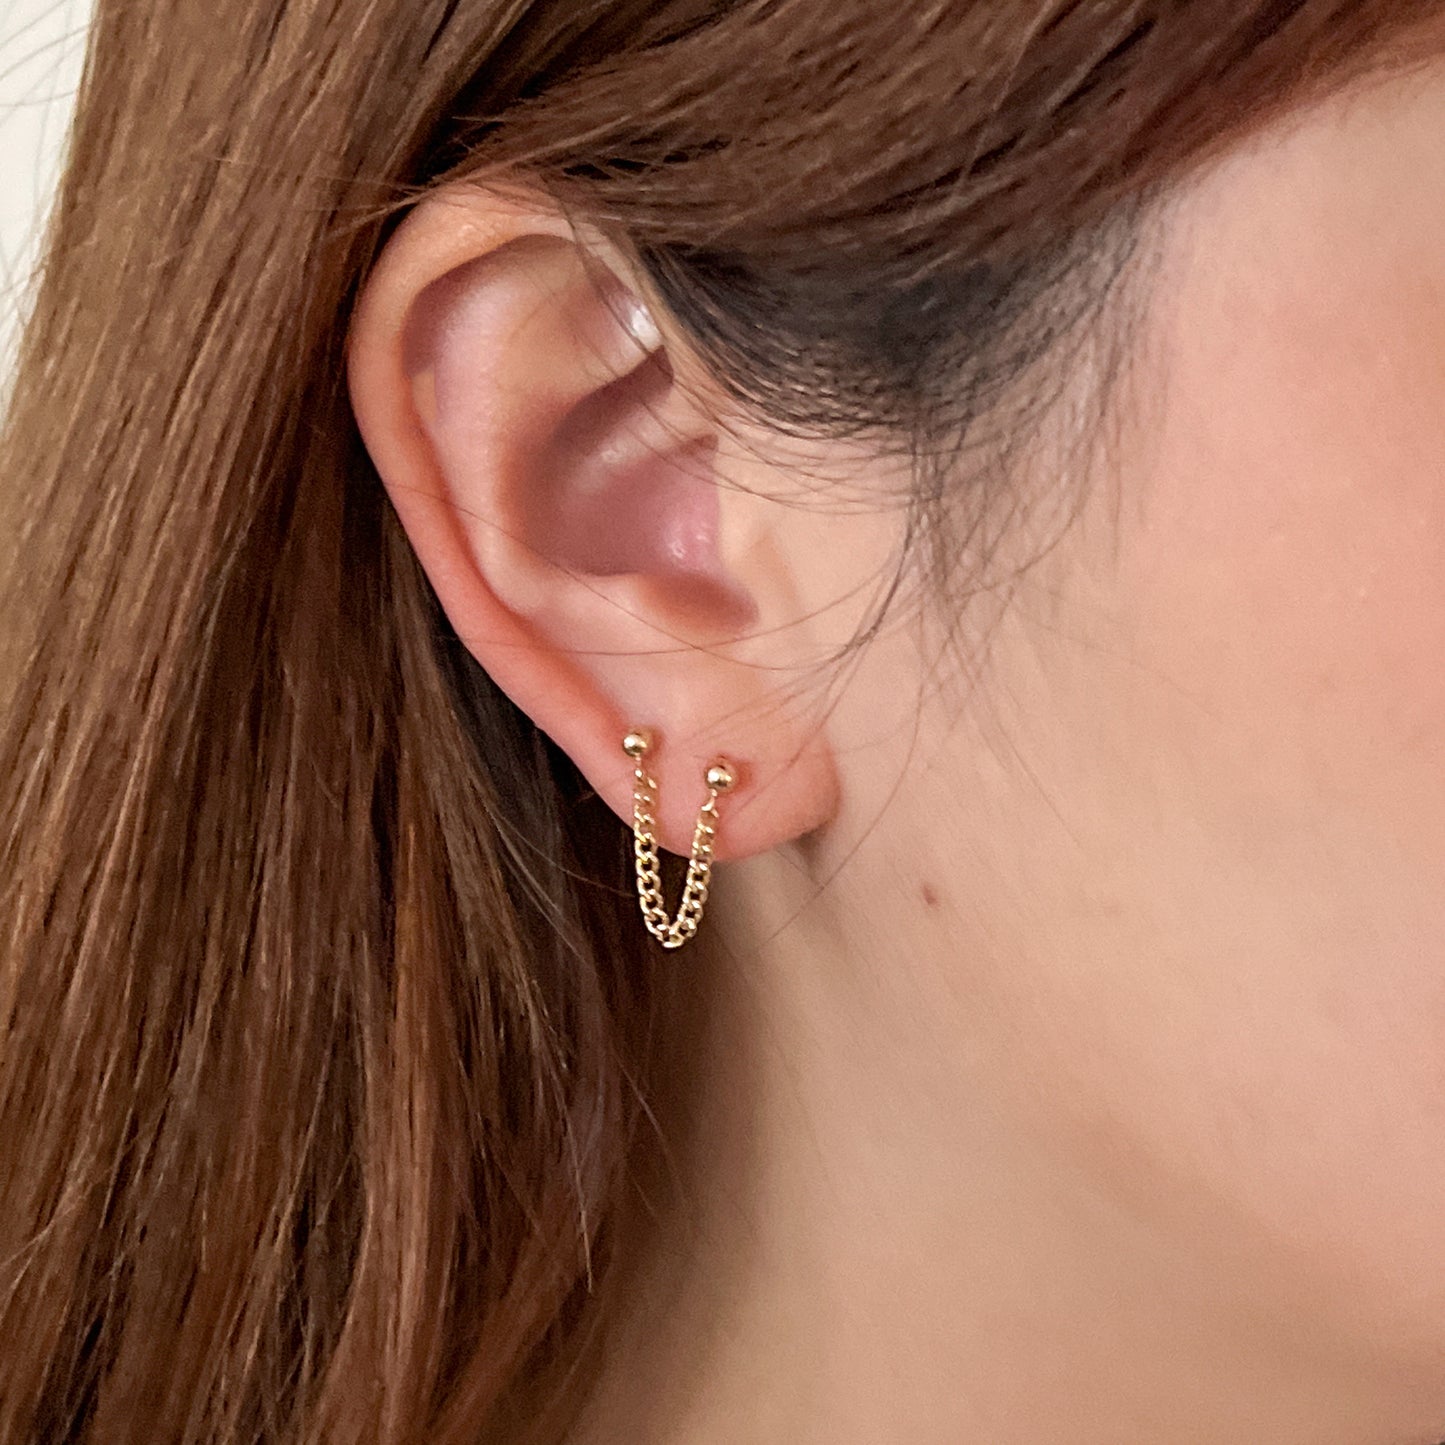 earring for double piercing